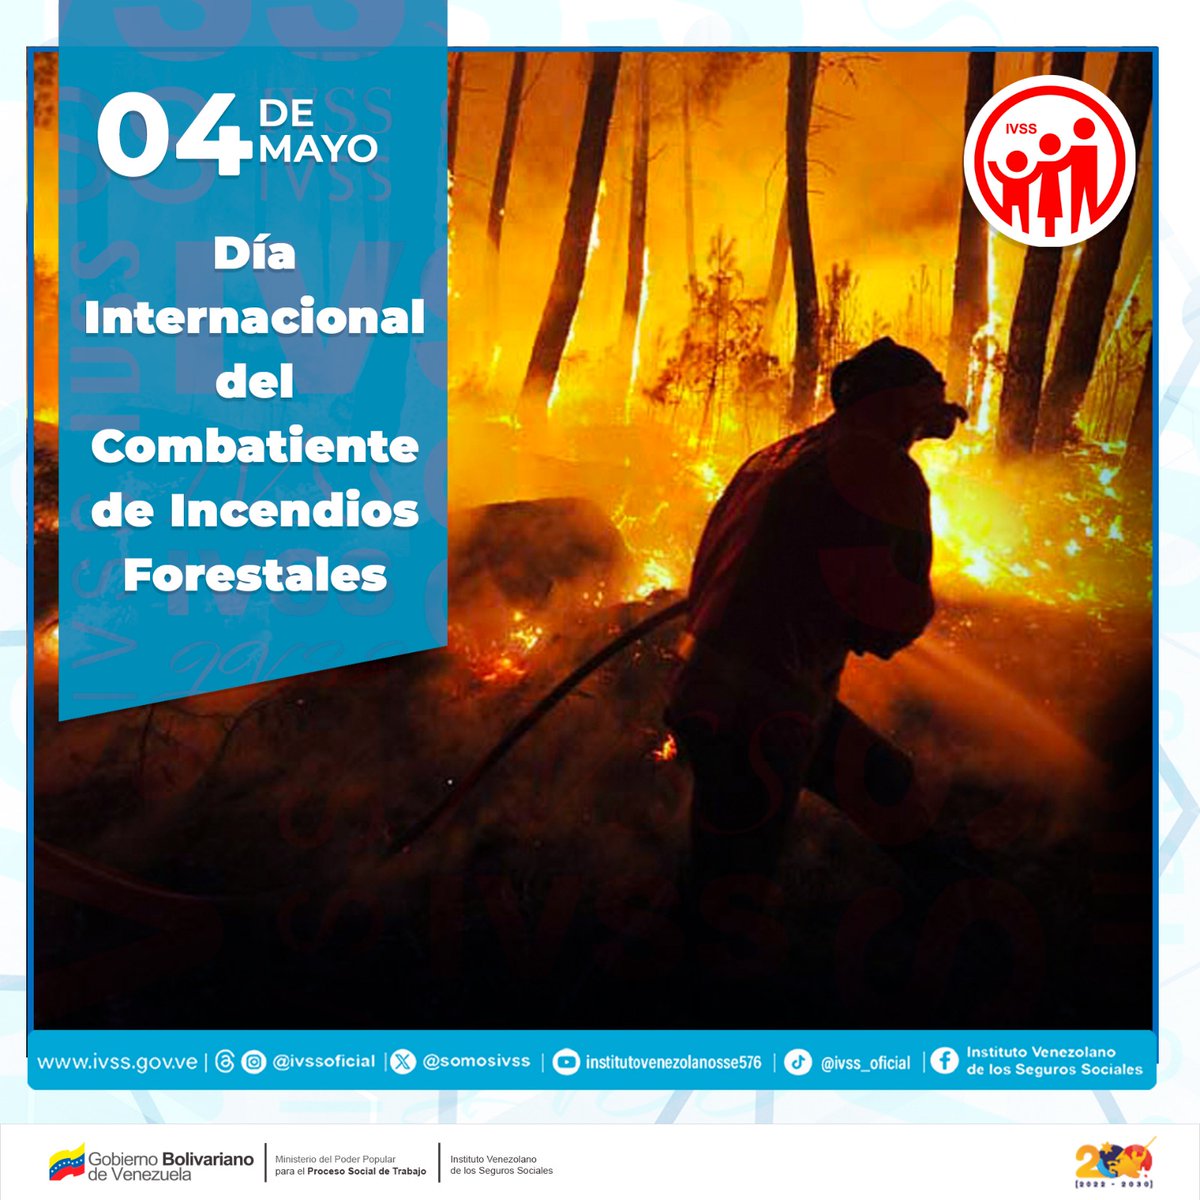 Hoy celebramos el Día Internacional del Combatiente de Incendios Forestales. En el IVSS rendimos homenaje a estos héroes y heroínas que arriesgan su vida para proteger nuestros bosques y ecosistemas. ¡Gracias por su valentía y compromiso! @NicolasMaduro @MagaGutierrezV